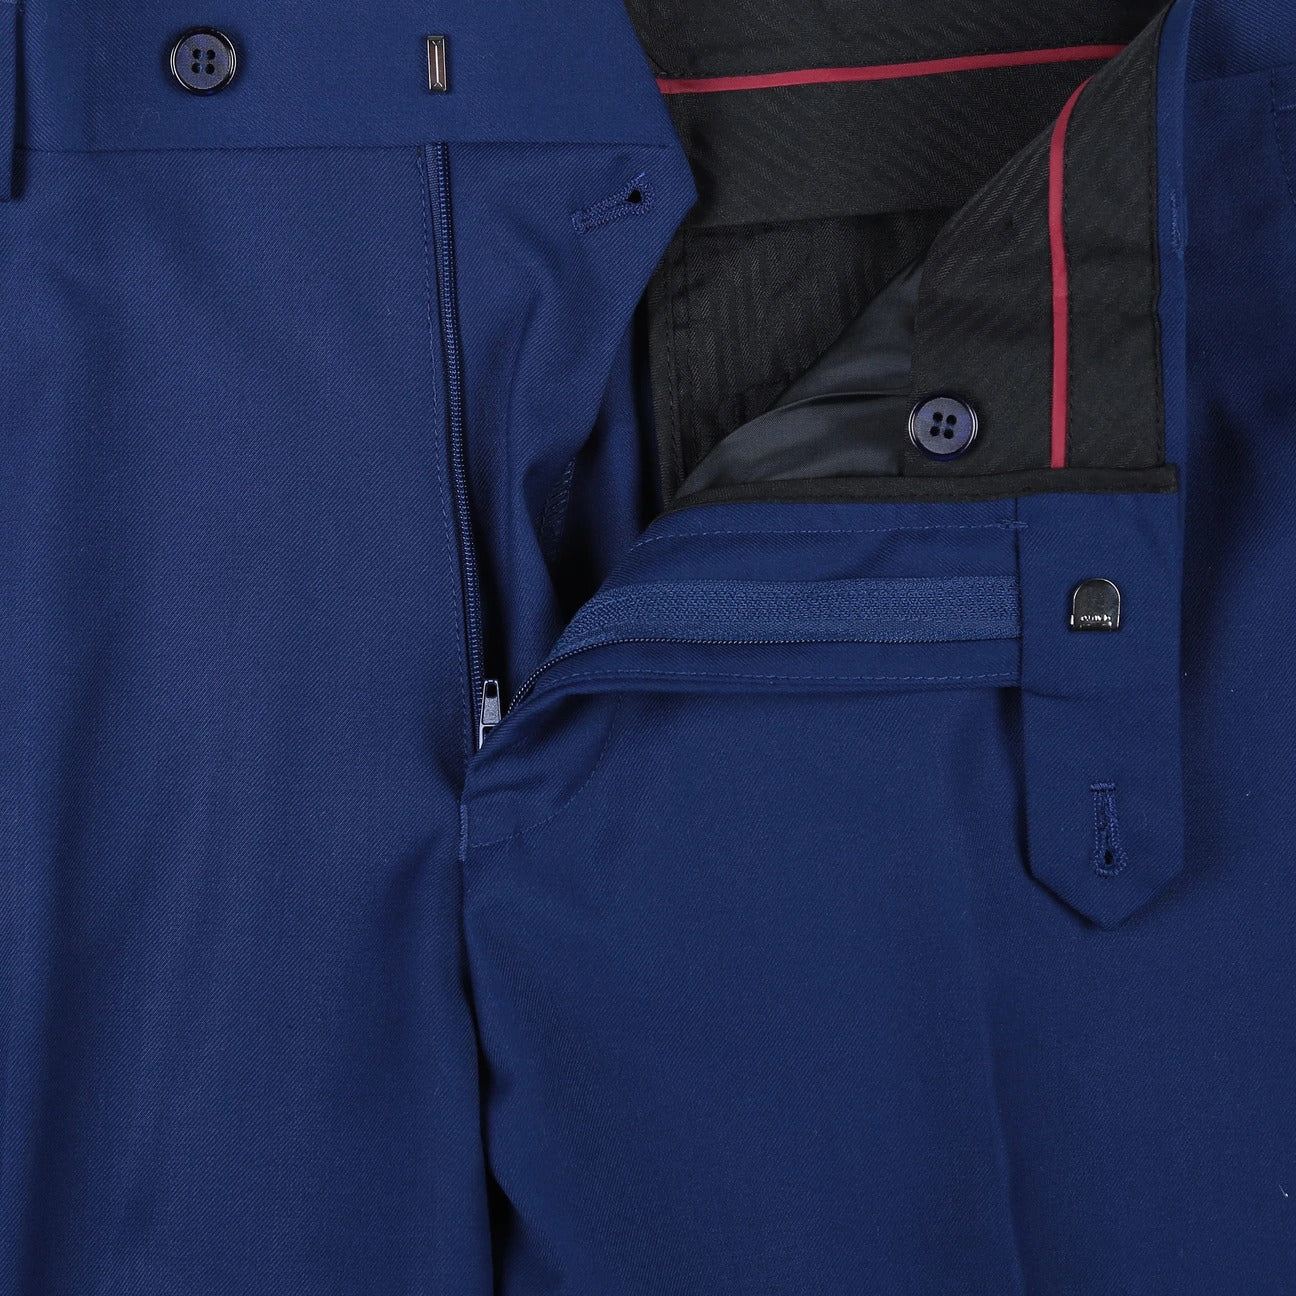 RENOIR Blue Classic Fit Flat Front Suit Separate Pants 201-20